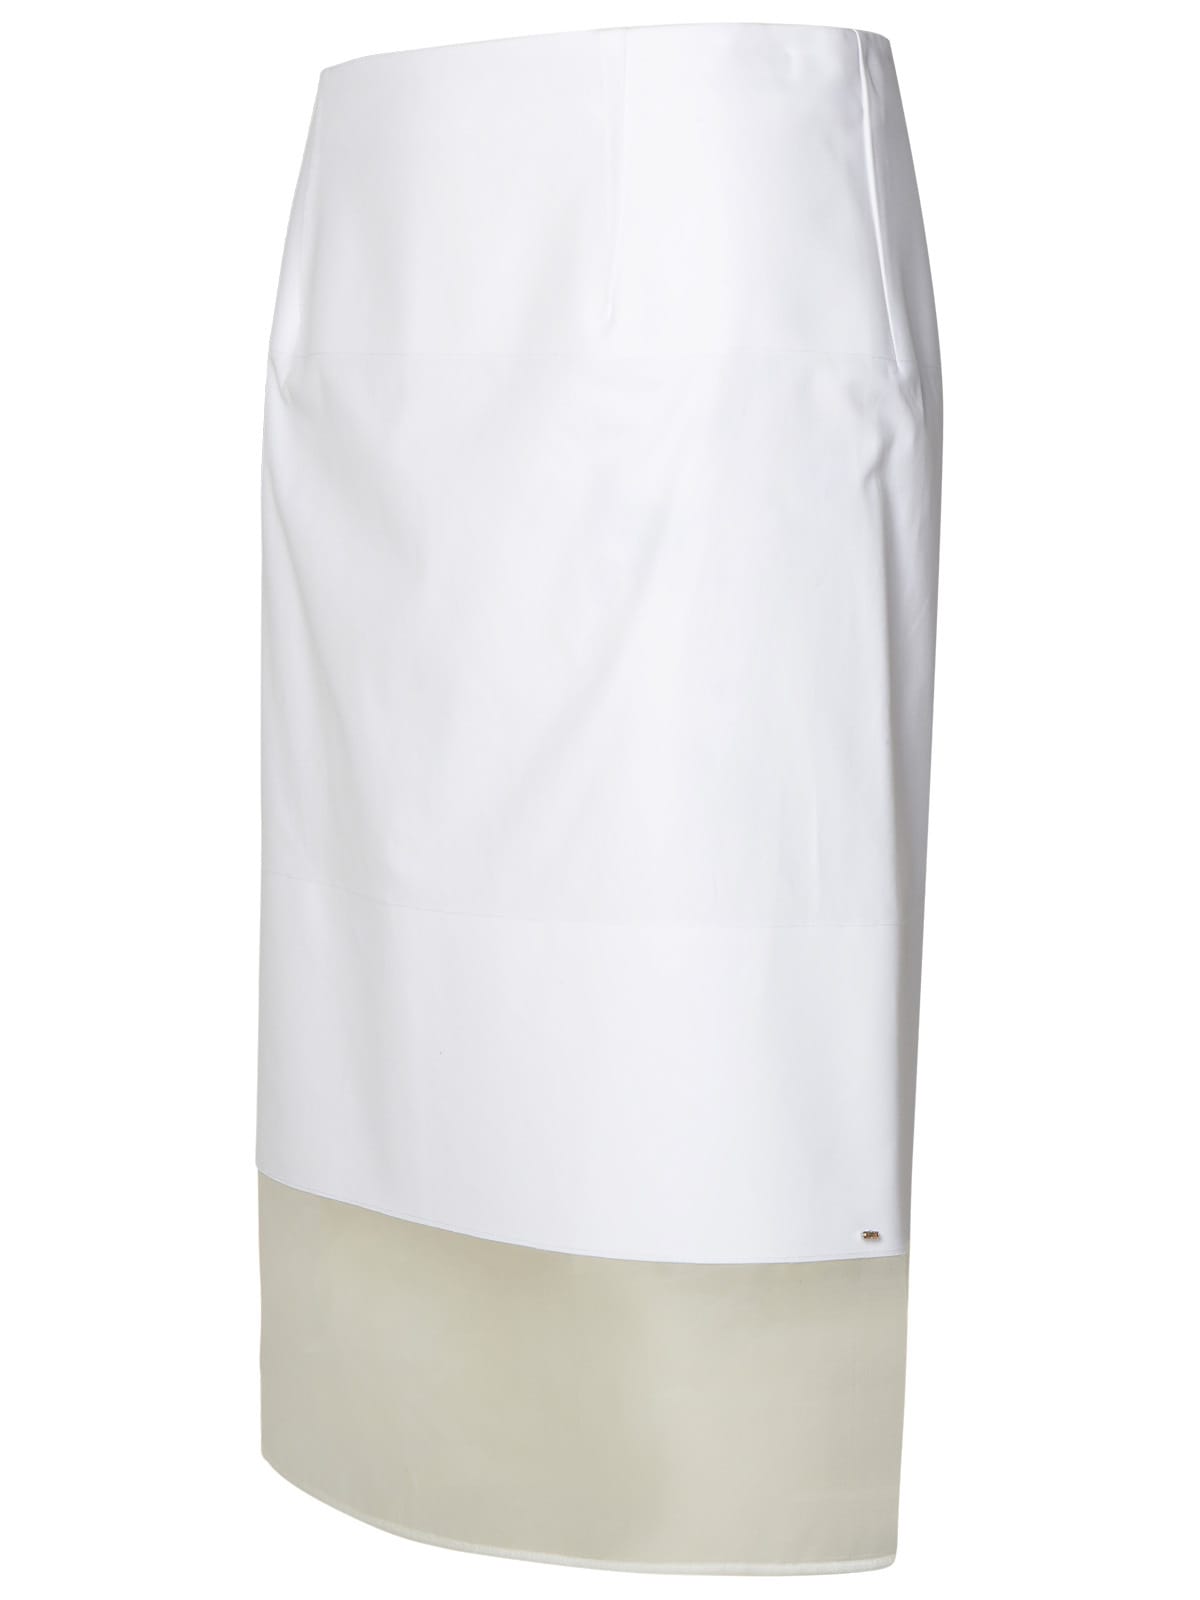 Shop Sportmax Turchia White Cotton Skirt